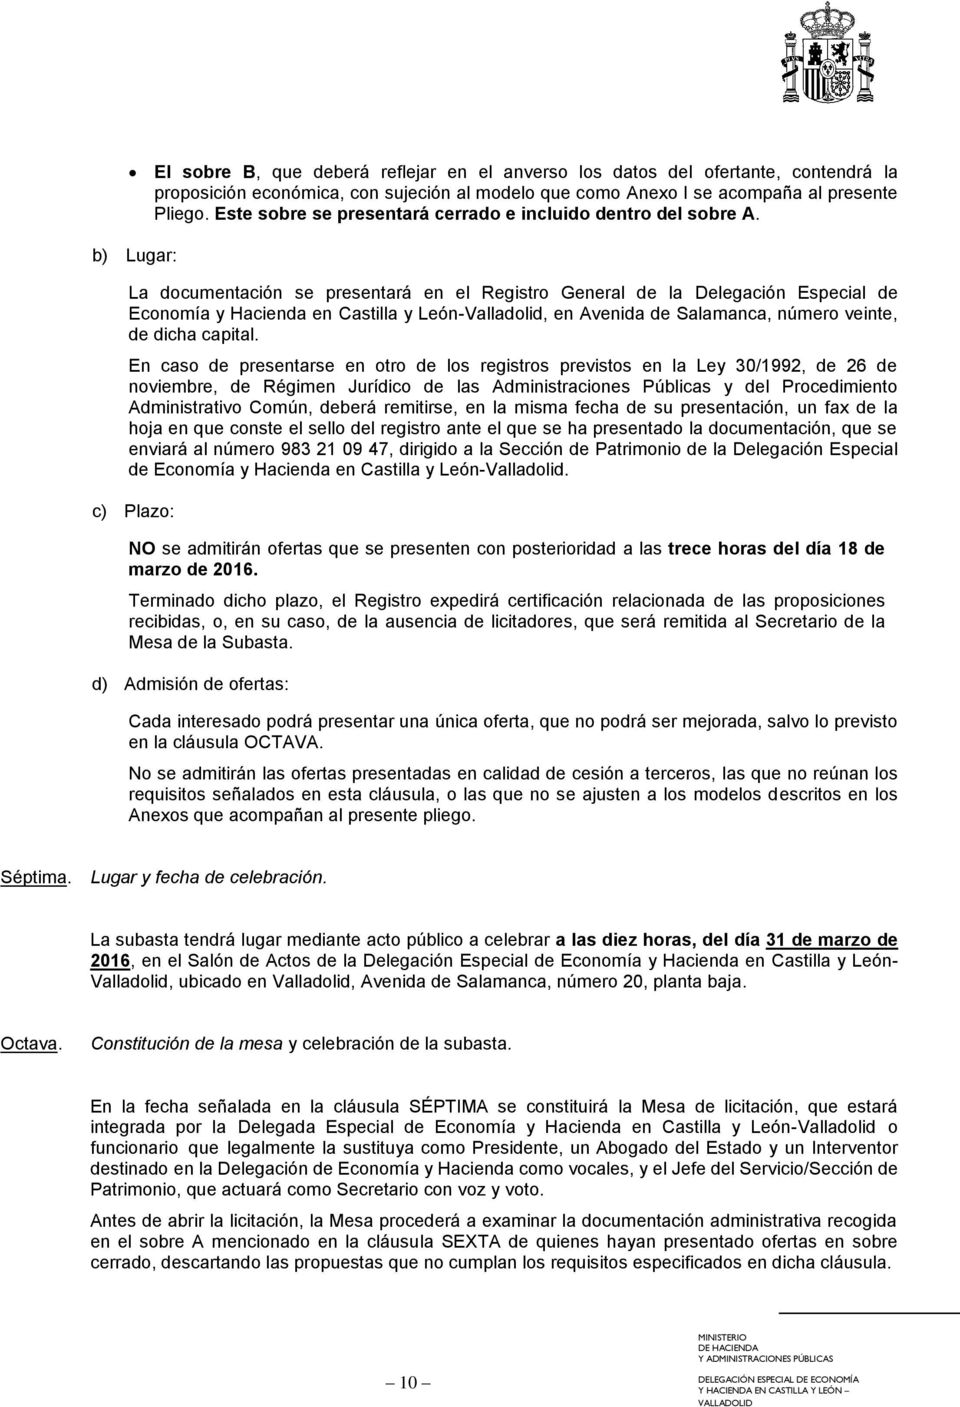 b) Lugar: La documentación se presentará en el Registro General de la Delegación Especial de Economía y Hacienda en Castilla y León-Valladolid, en Avenida de Salamanca, número veinte, de dicha